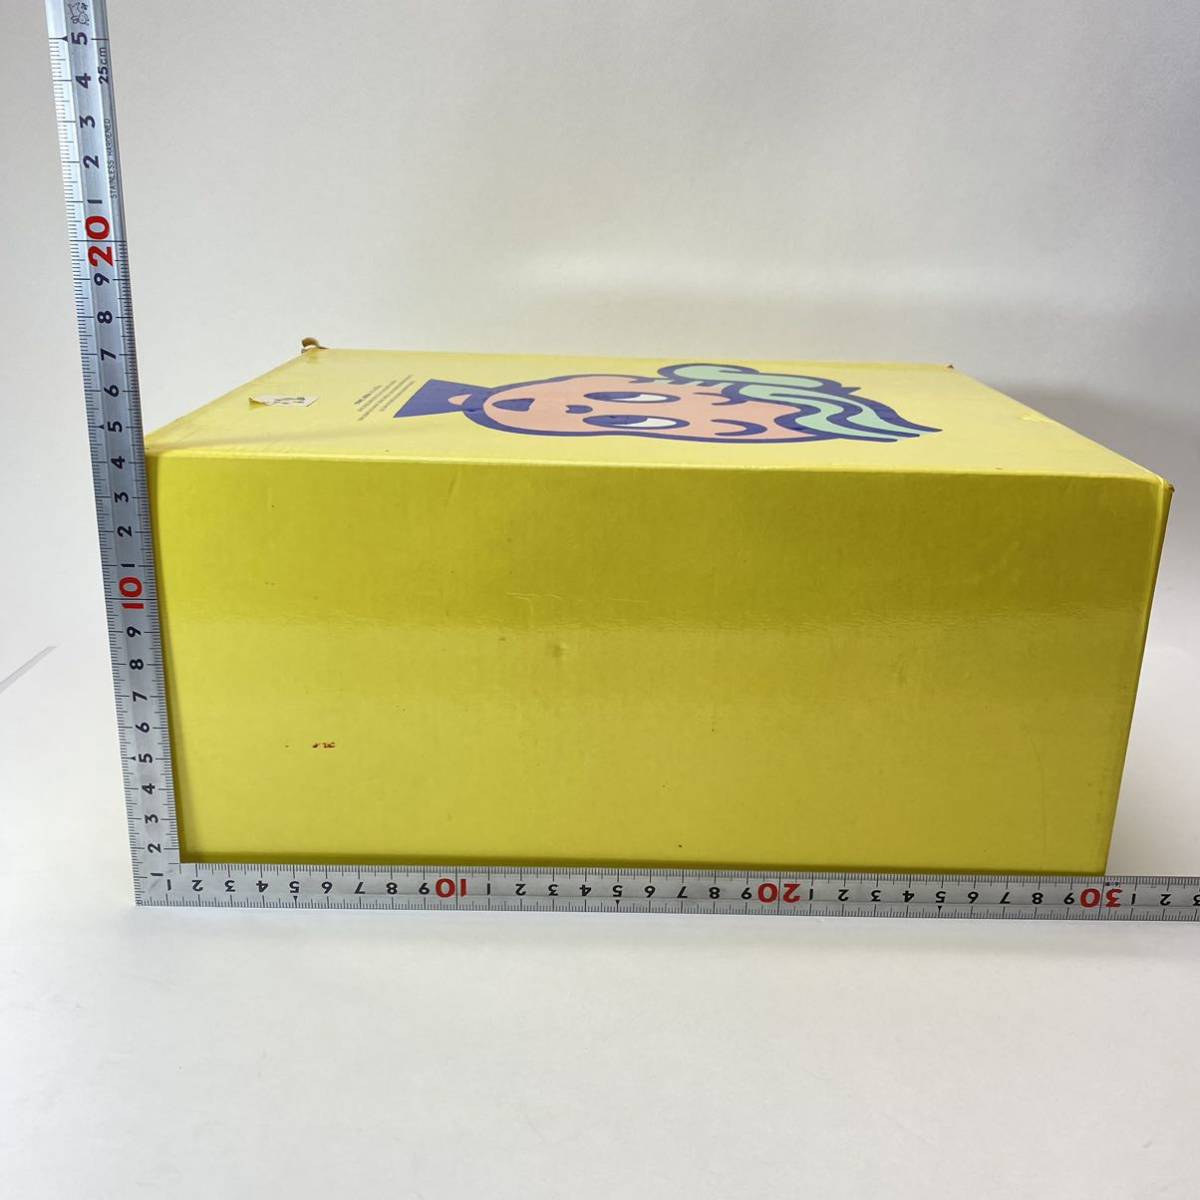  Mister Donut бумага коробка выдвижной ящик бардачок желтый цвет желтый . рисовое поле . retro pop Novelty подлинная вещь текущее состояние товар 0205